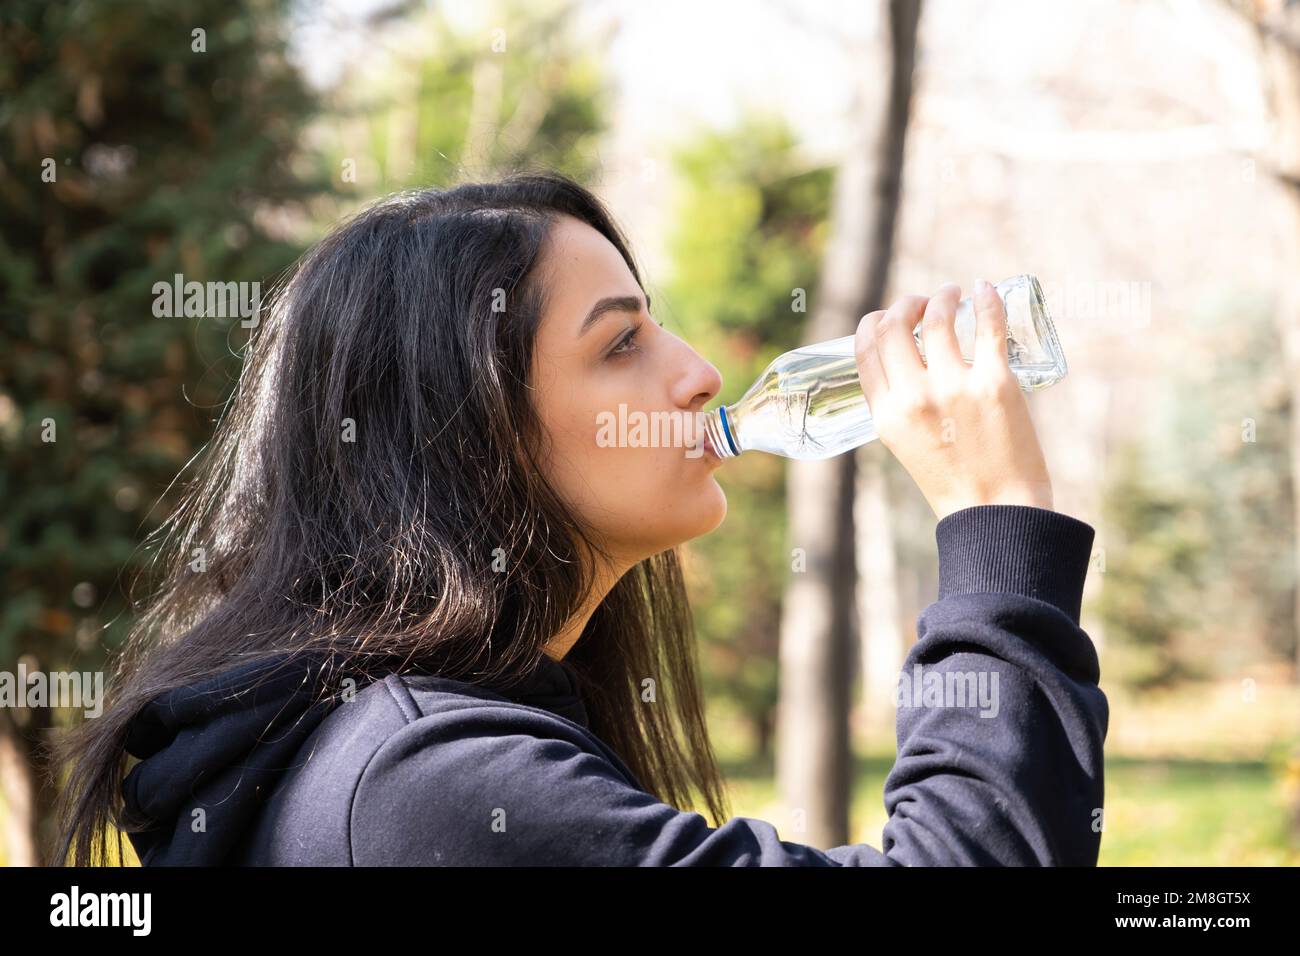 Profil de vue latérale de la jeune femme de l'eau potable. Contenant une bouteille en verre. Jogging, course, faire une pause. Activités de plein air en automne. Habitudes de vie saines. Banque D'Images